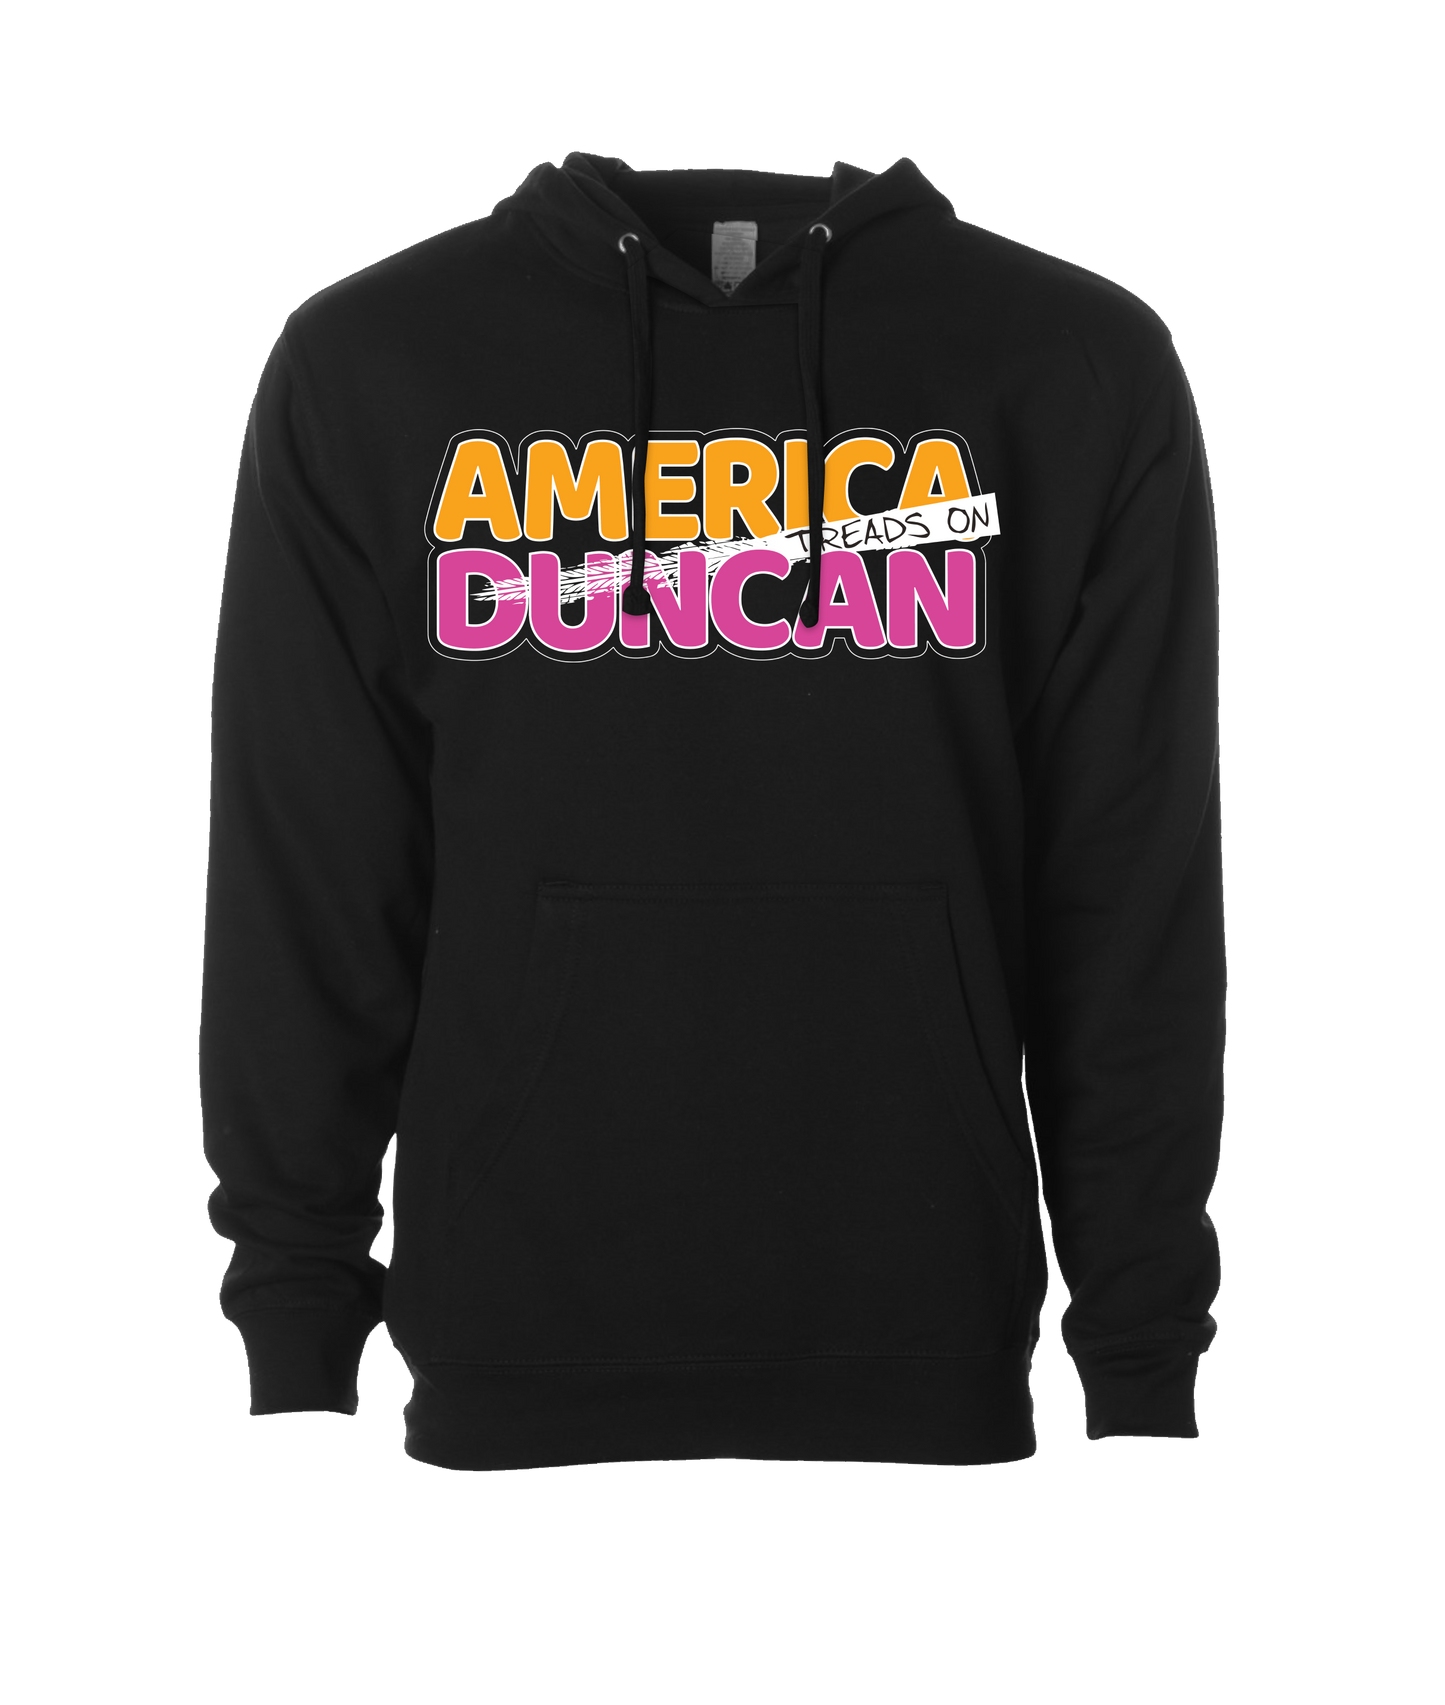 Duncan Jay - AMERICA TREADS ON DUNCAN - Black Hoodie